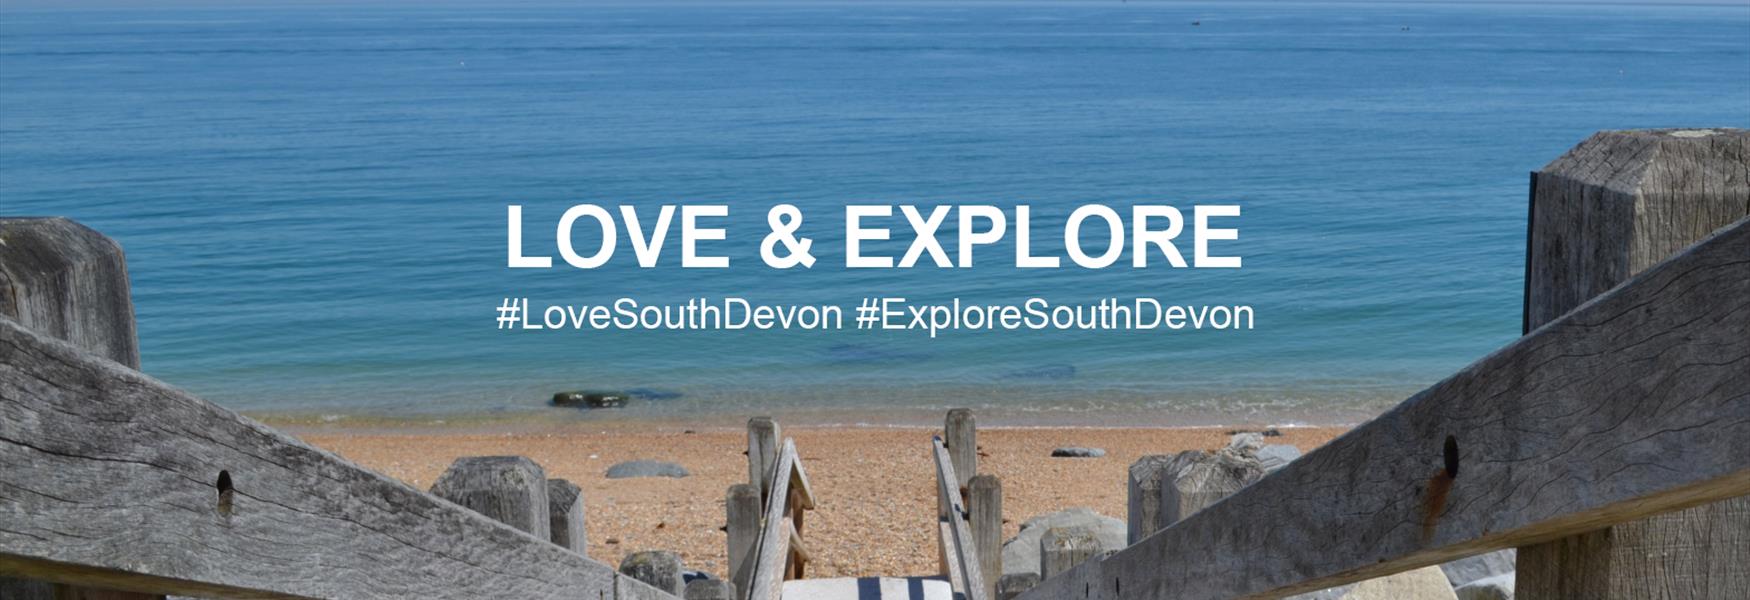 Love and Explore South Devon
#LoveSouthDevon #ExploreSouthDevon